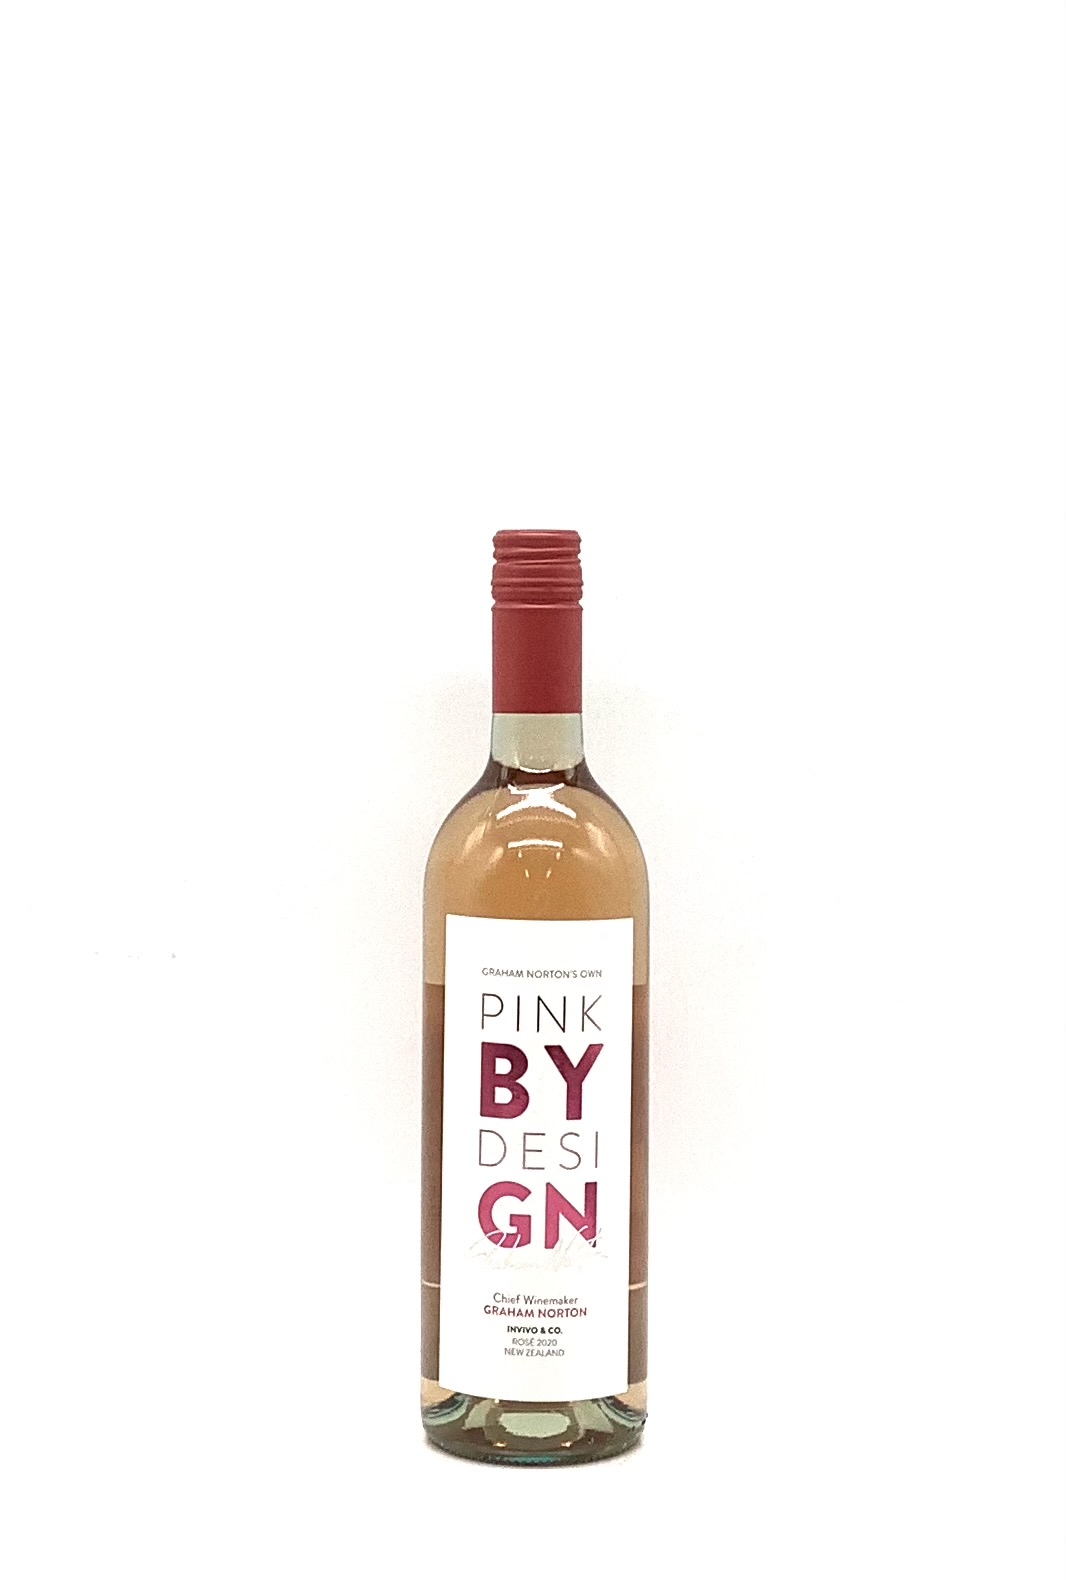 インヴィーヴォ グラハムノートン ピンクデザインロゼ 2020 750ml | 酒のいろは | 日本酒・焼酎・ワイン・ウイスキーの通販